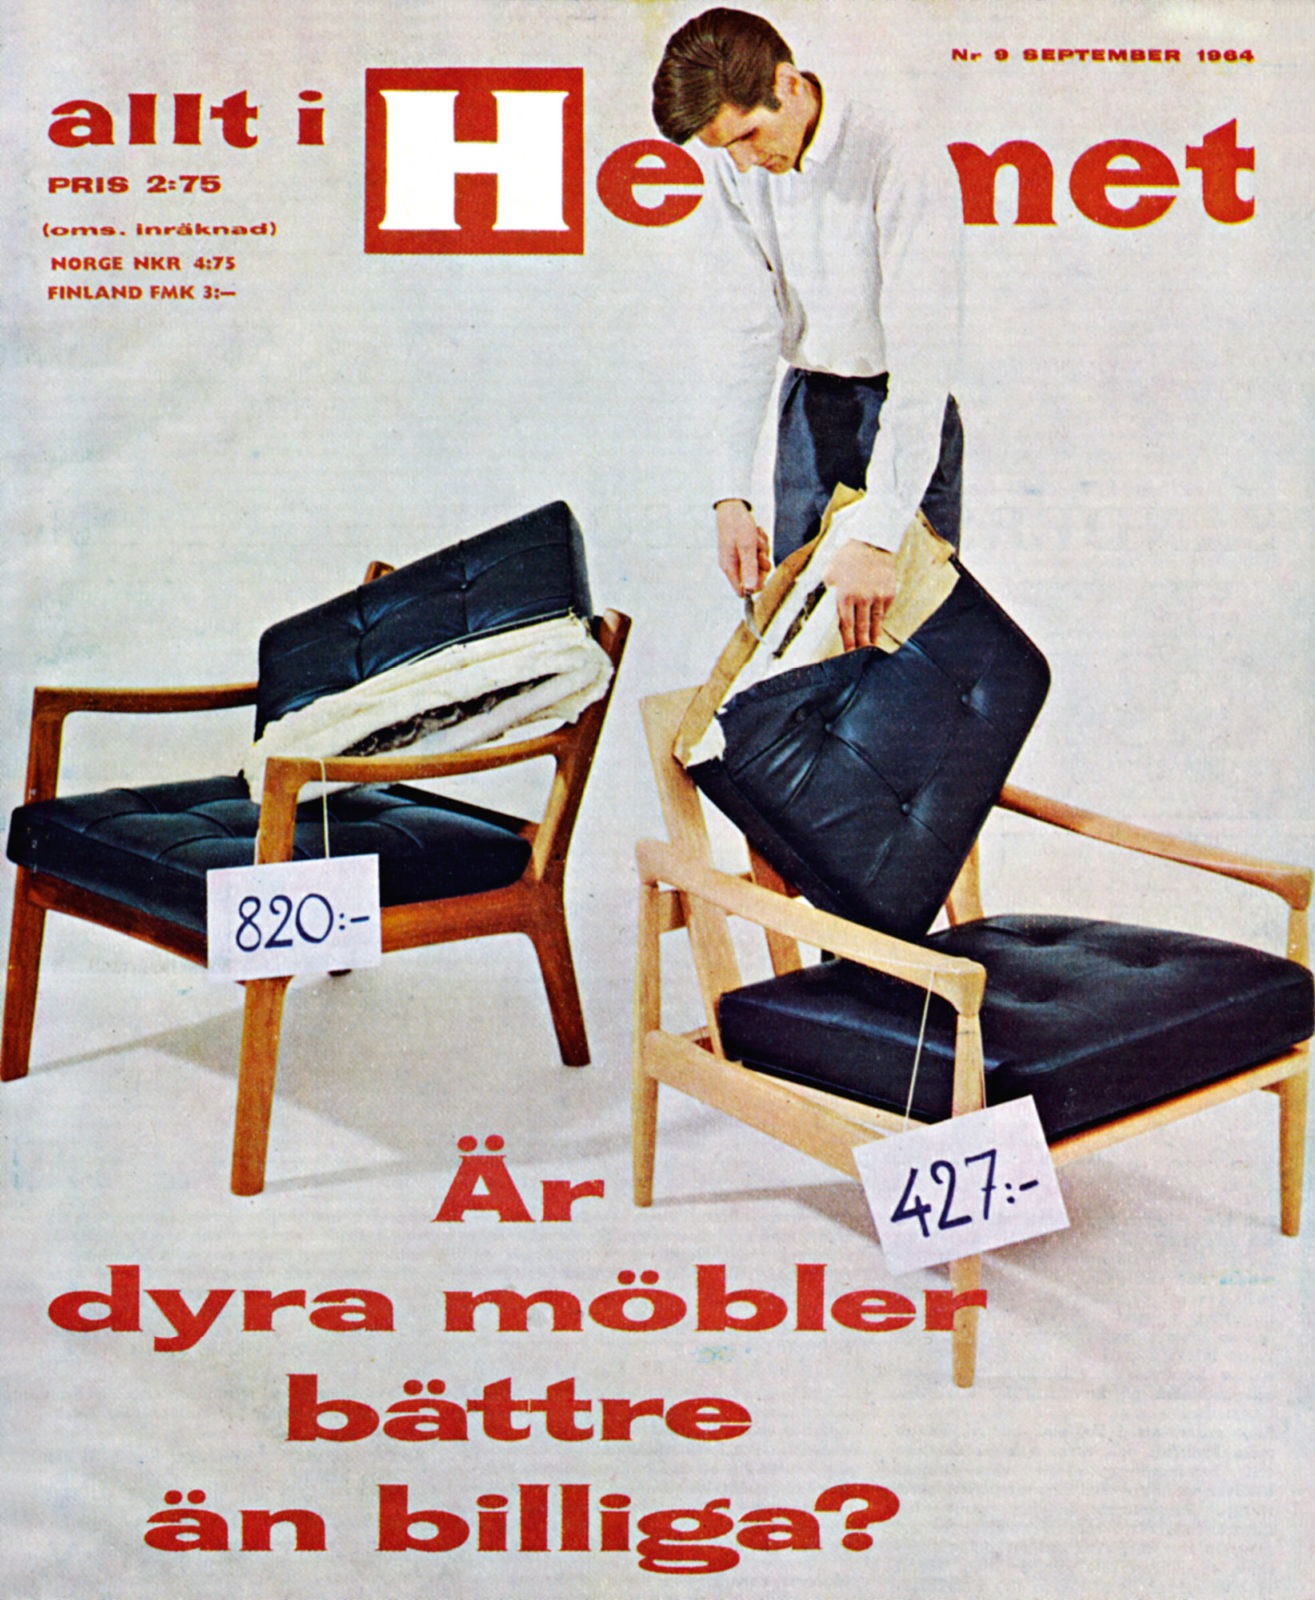 Magazine « Les meubles chers valent-ils mieux que ceux à prix bas ? ». Homme, fauteuils cassés, étiquettes prix différents.